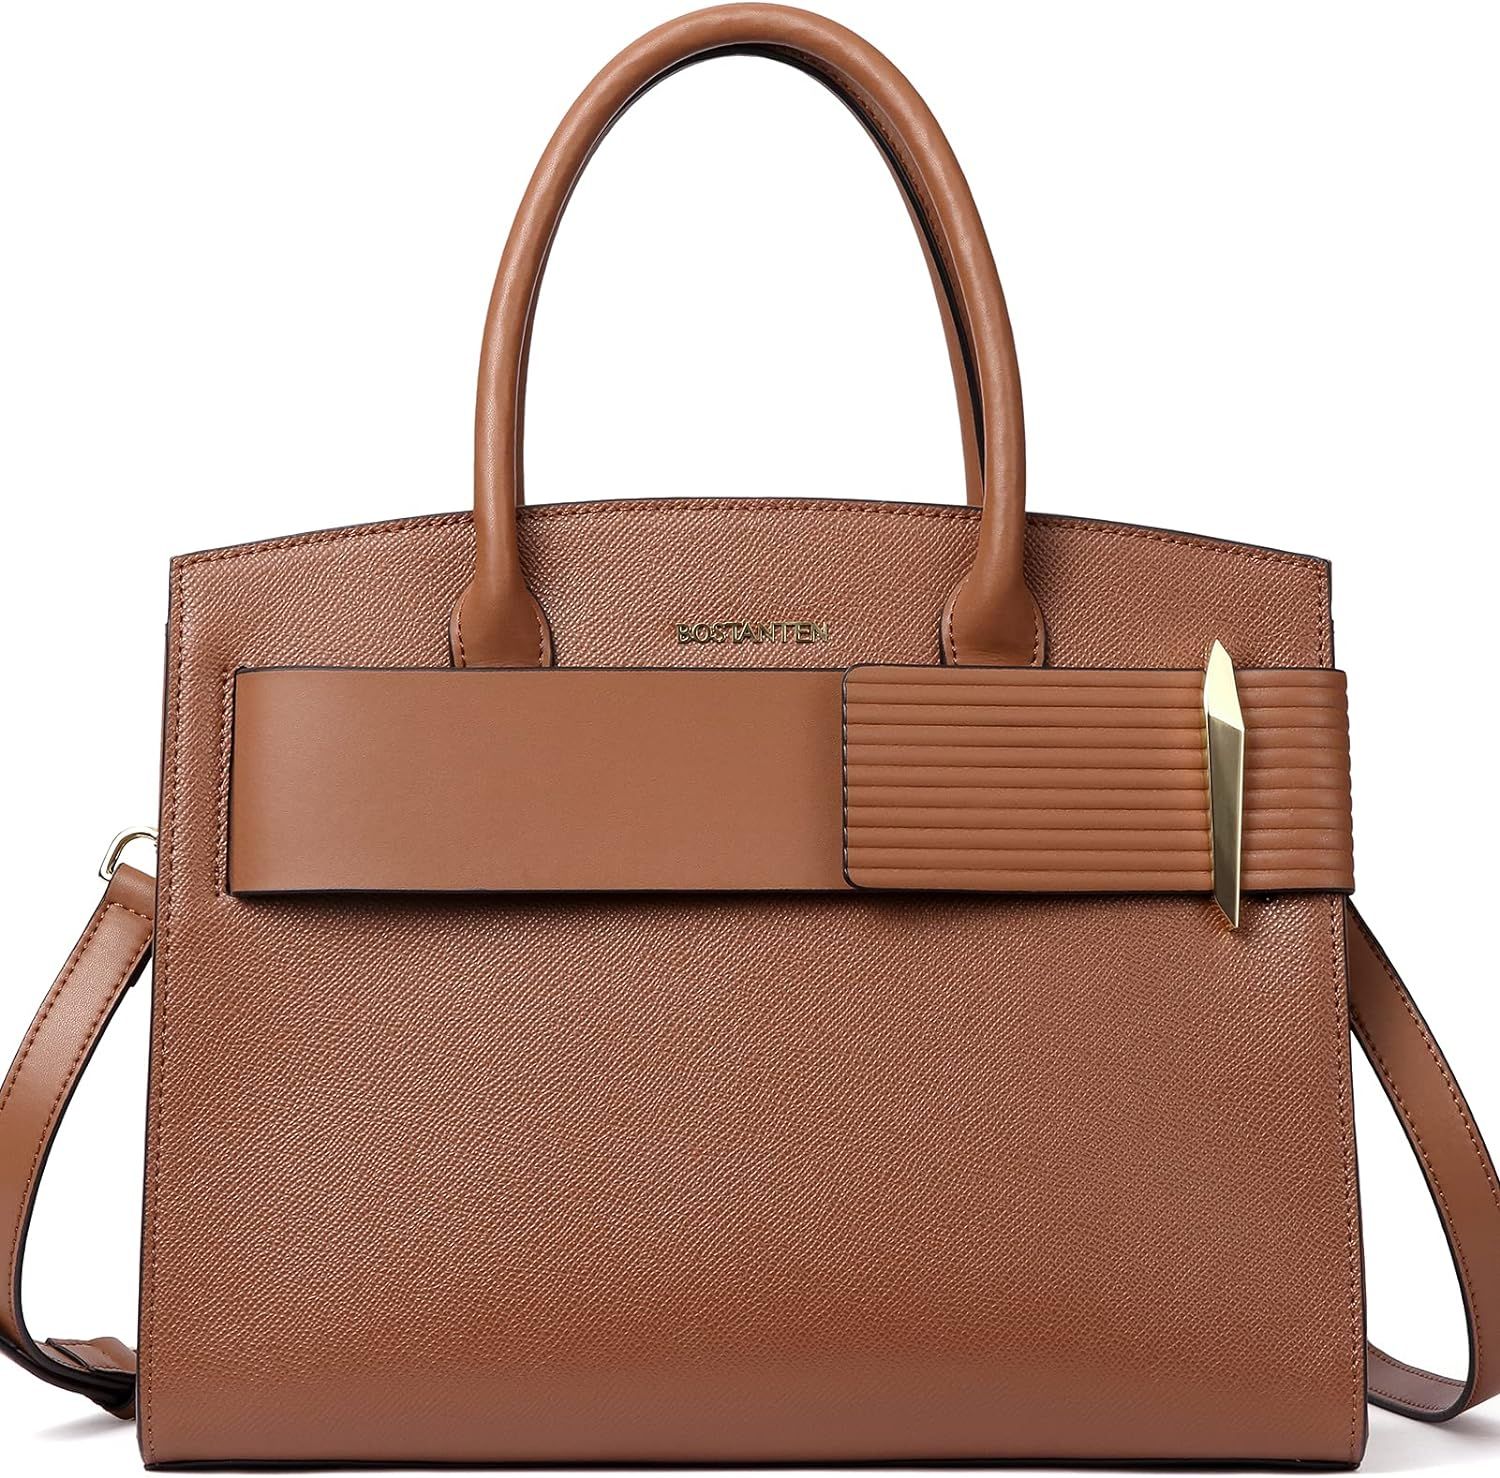 BOSTANTEN Women Handbags Leather Ladies Shoulder Bags Designer Top Handle Work Travel Satchel Tot... | Amazon (US)